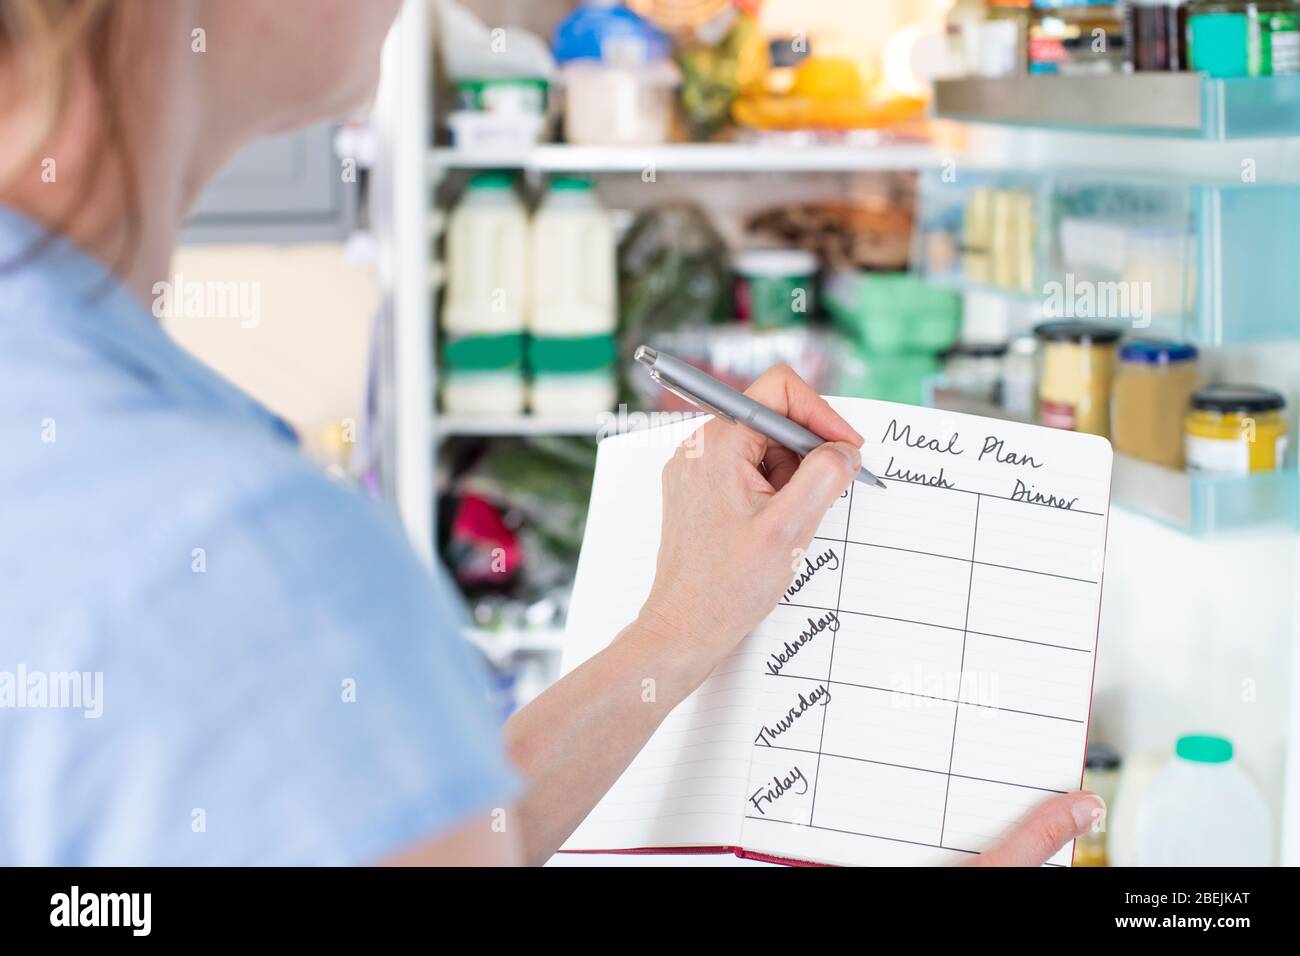 Mujer de pie frente a refrigerador en la cocina con un cuaderno de escribir el plan de comida semanal Foto de stock